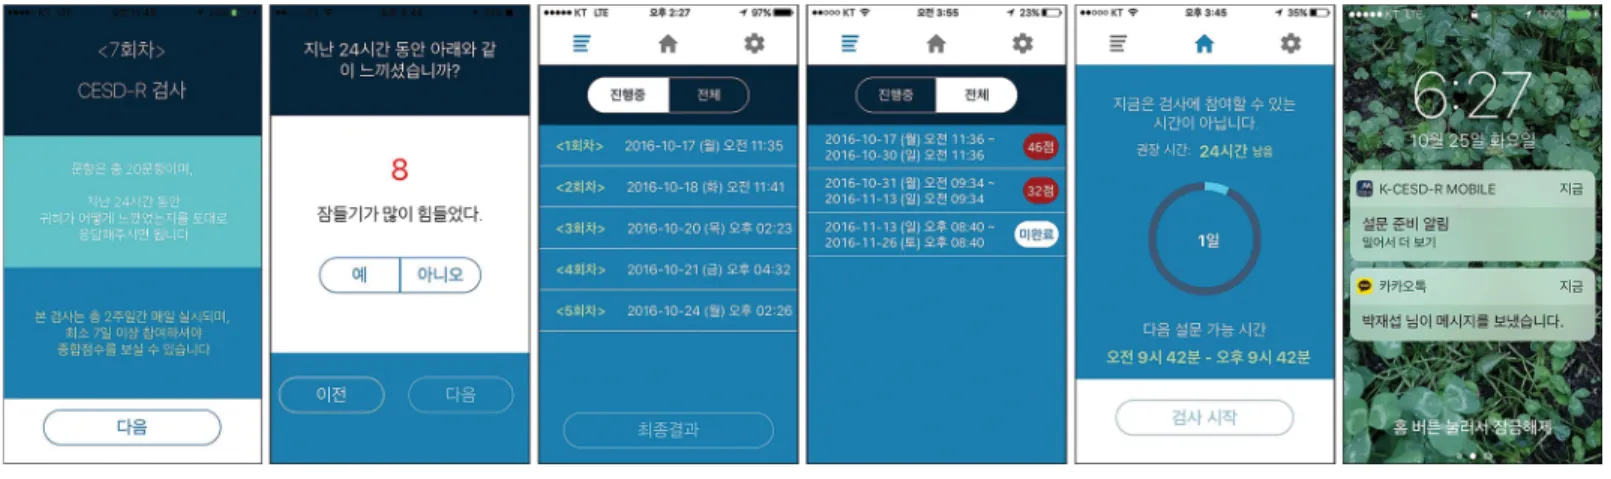 Fig 1. Screenshots of UI/GUI design of the K-CESD-R Mobile app. https://doi.org/10.1371/journal.pone.0199118.g001